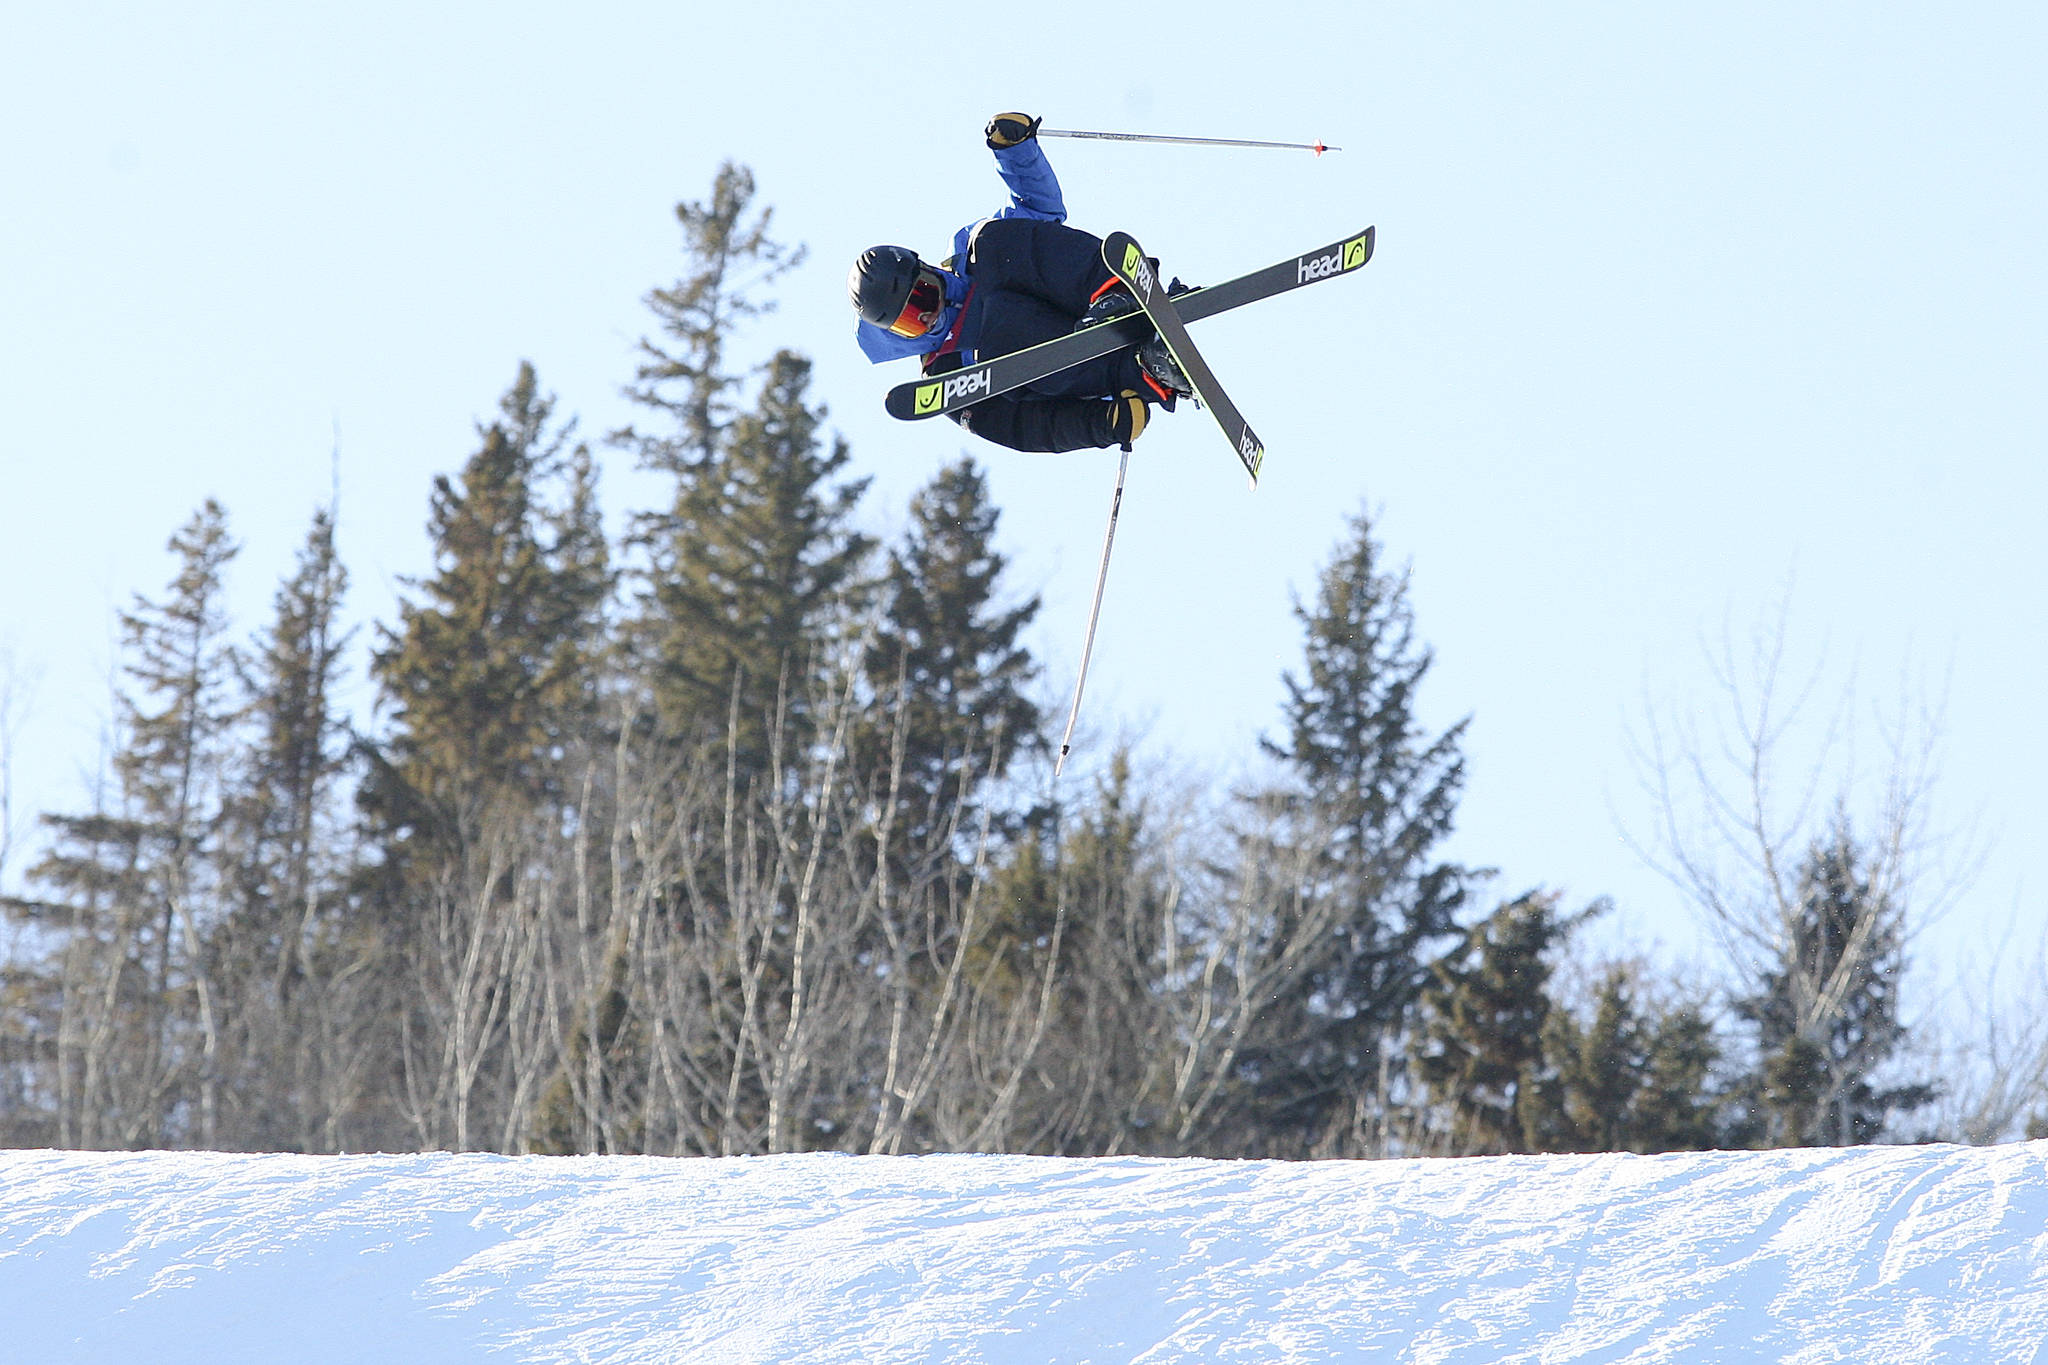 15665000_web1_190221-RDA-Quebec-skier-win